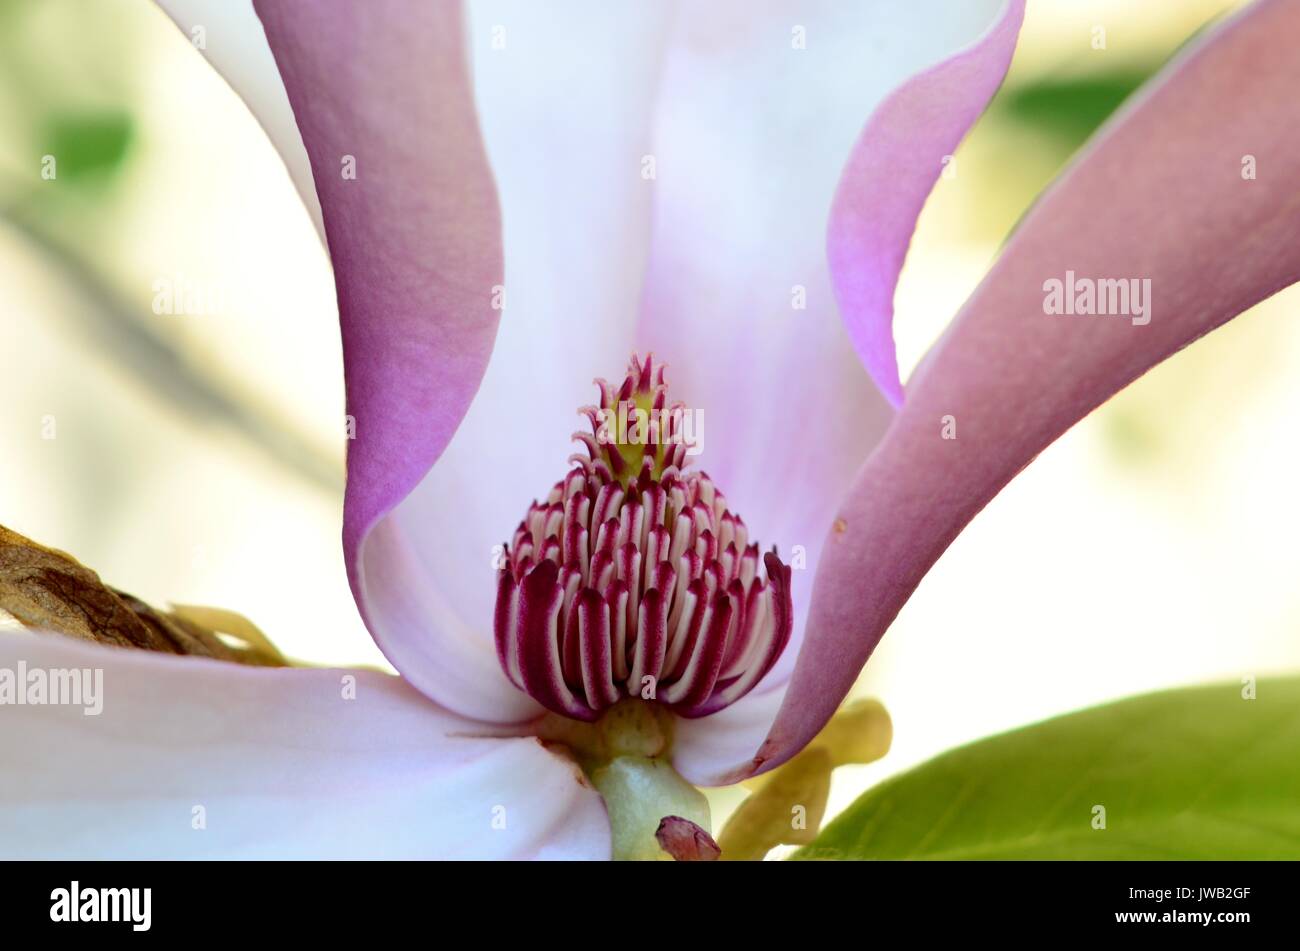 Cierre de un platillo en forma de tulipán morado flor magnolia, mostrando  el detalle de los pistilos y los estambres. Arbusto ha variedades perennes  y caducifolios Fotografía de stock - Alamy